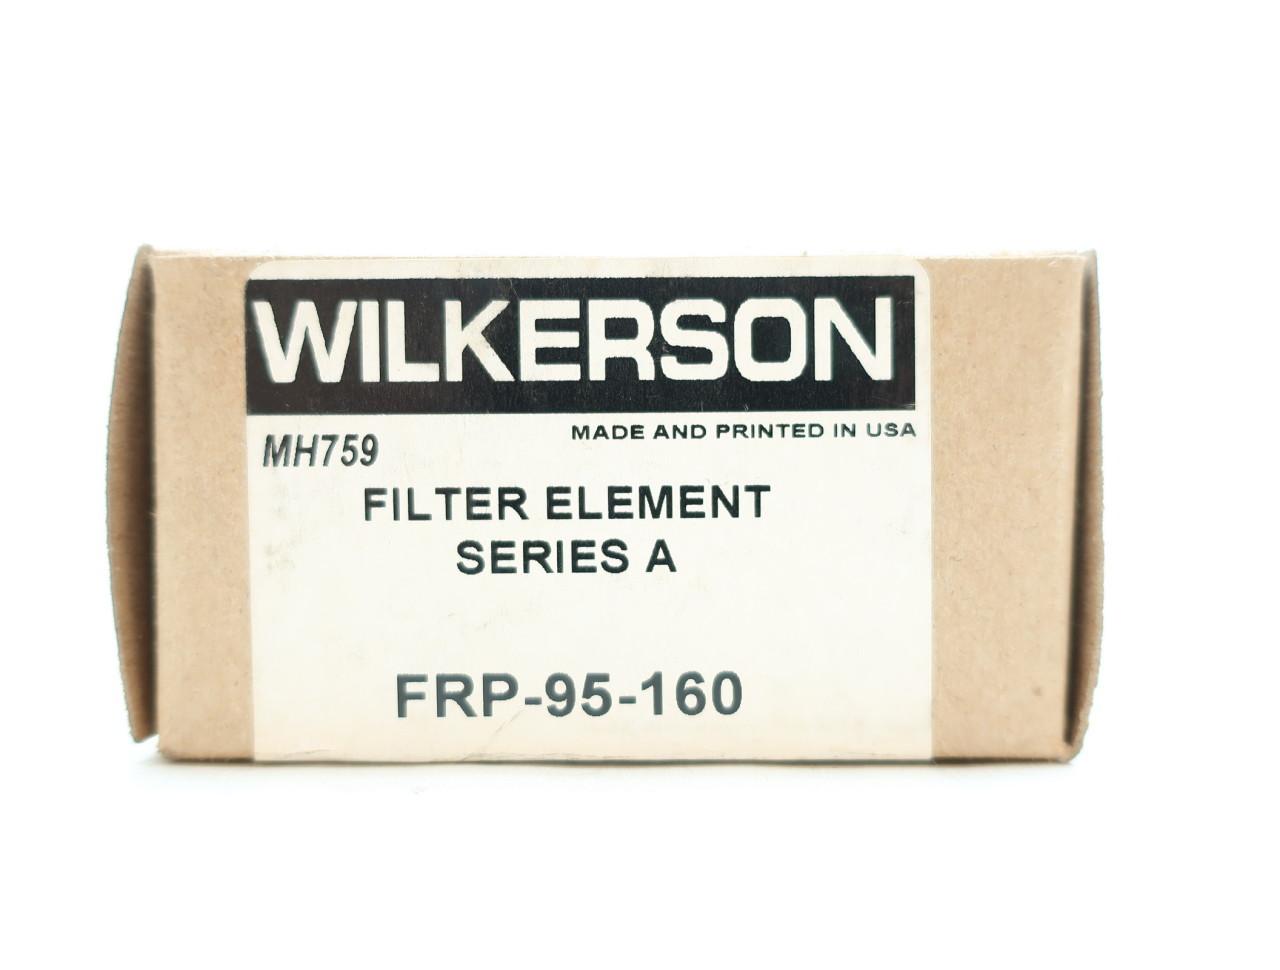 WILKERSON NIB SERIES A FILTER ELEMENT FRP-95-160 